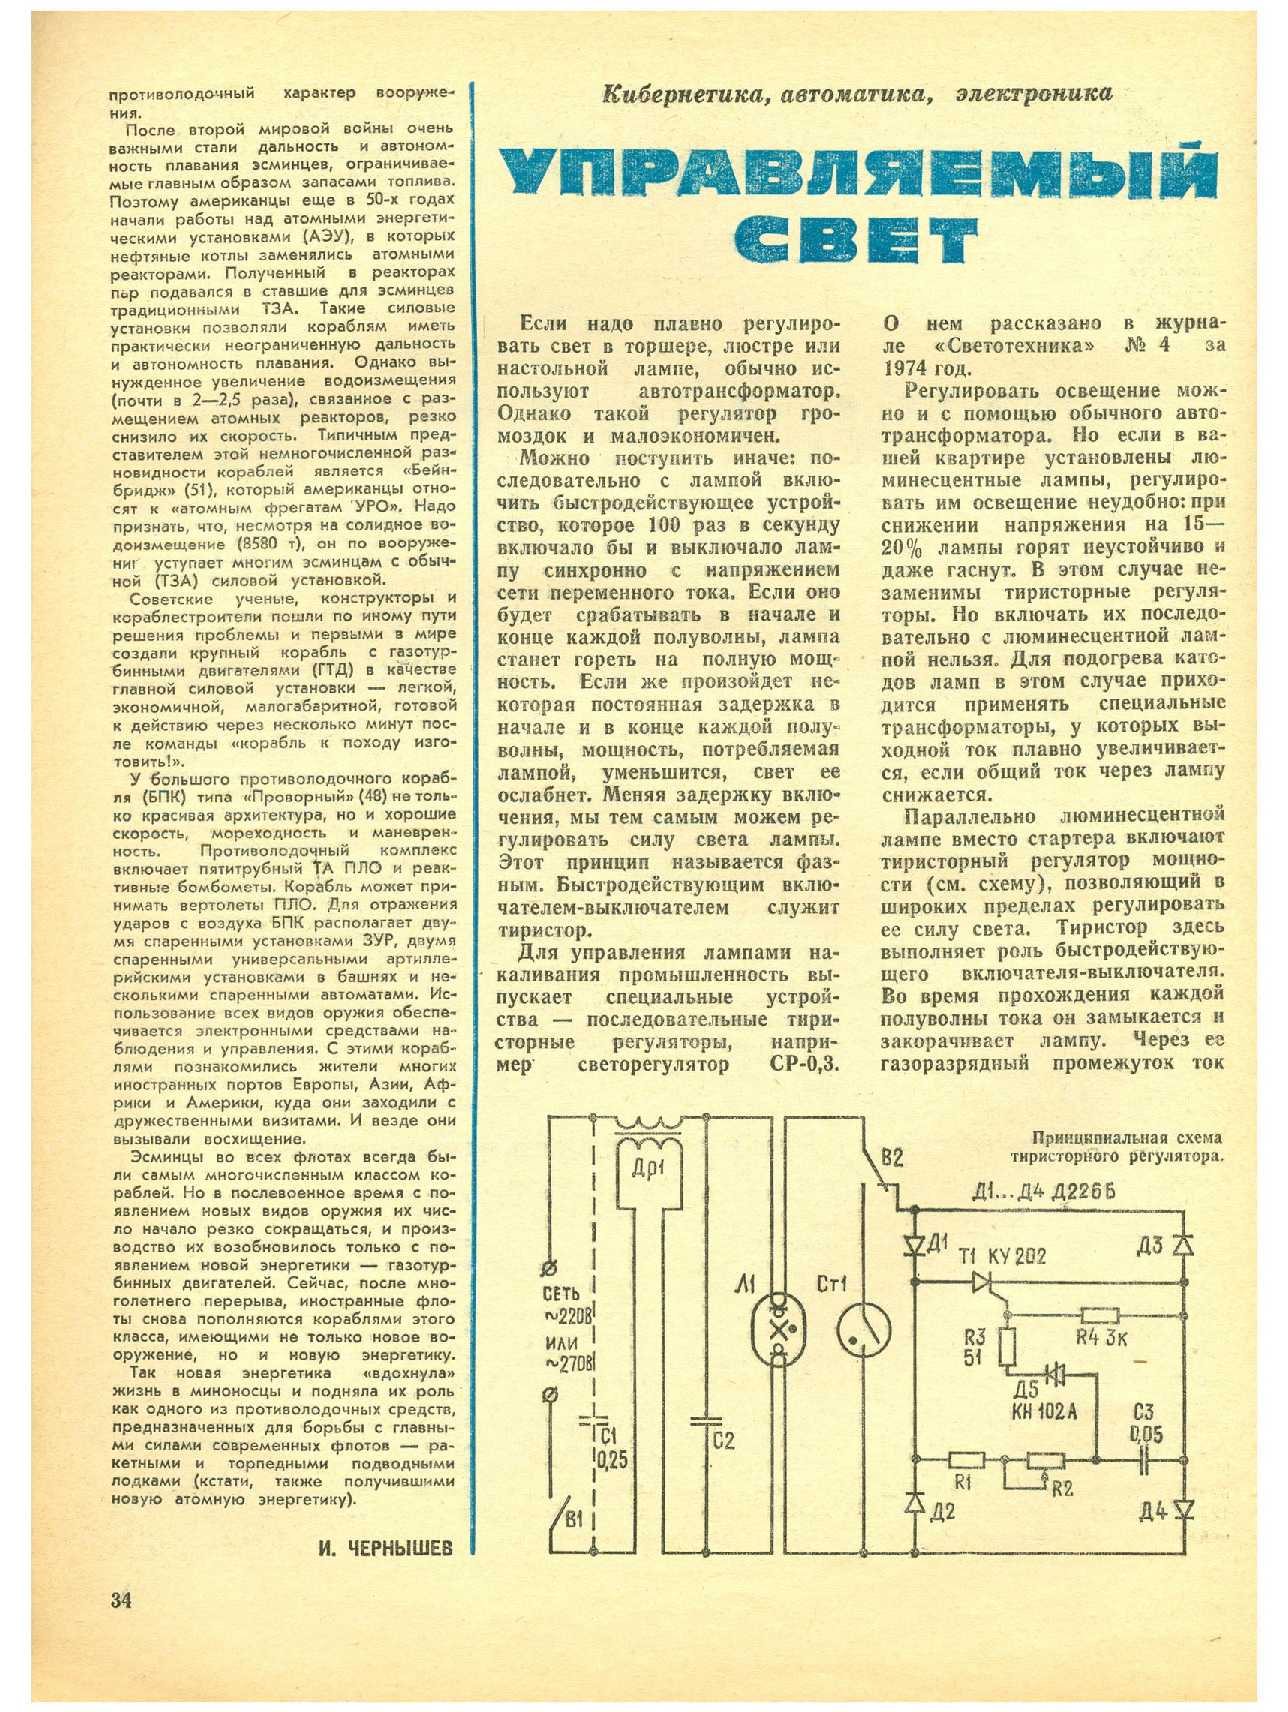 МК 1, 1977, 34 c.